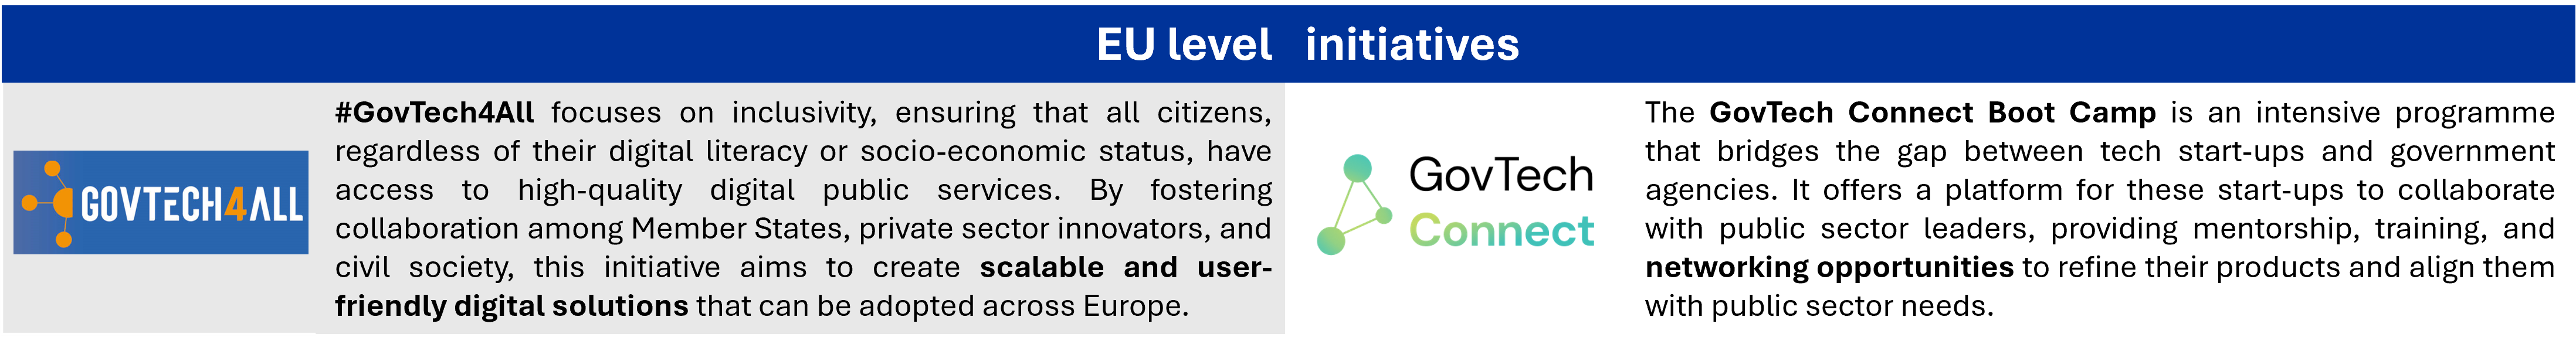 Πρωτοβουλίες της ΕΕ